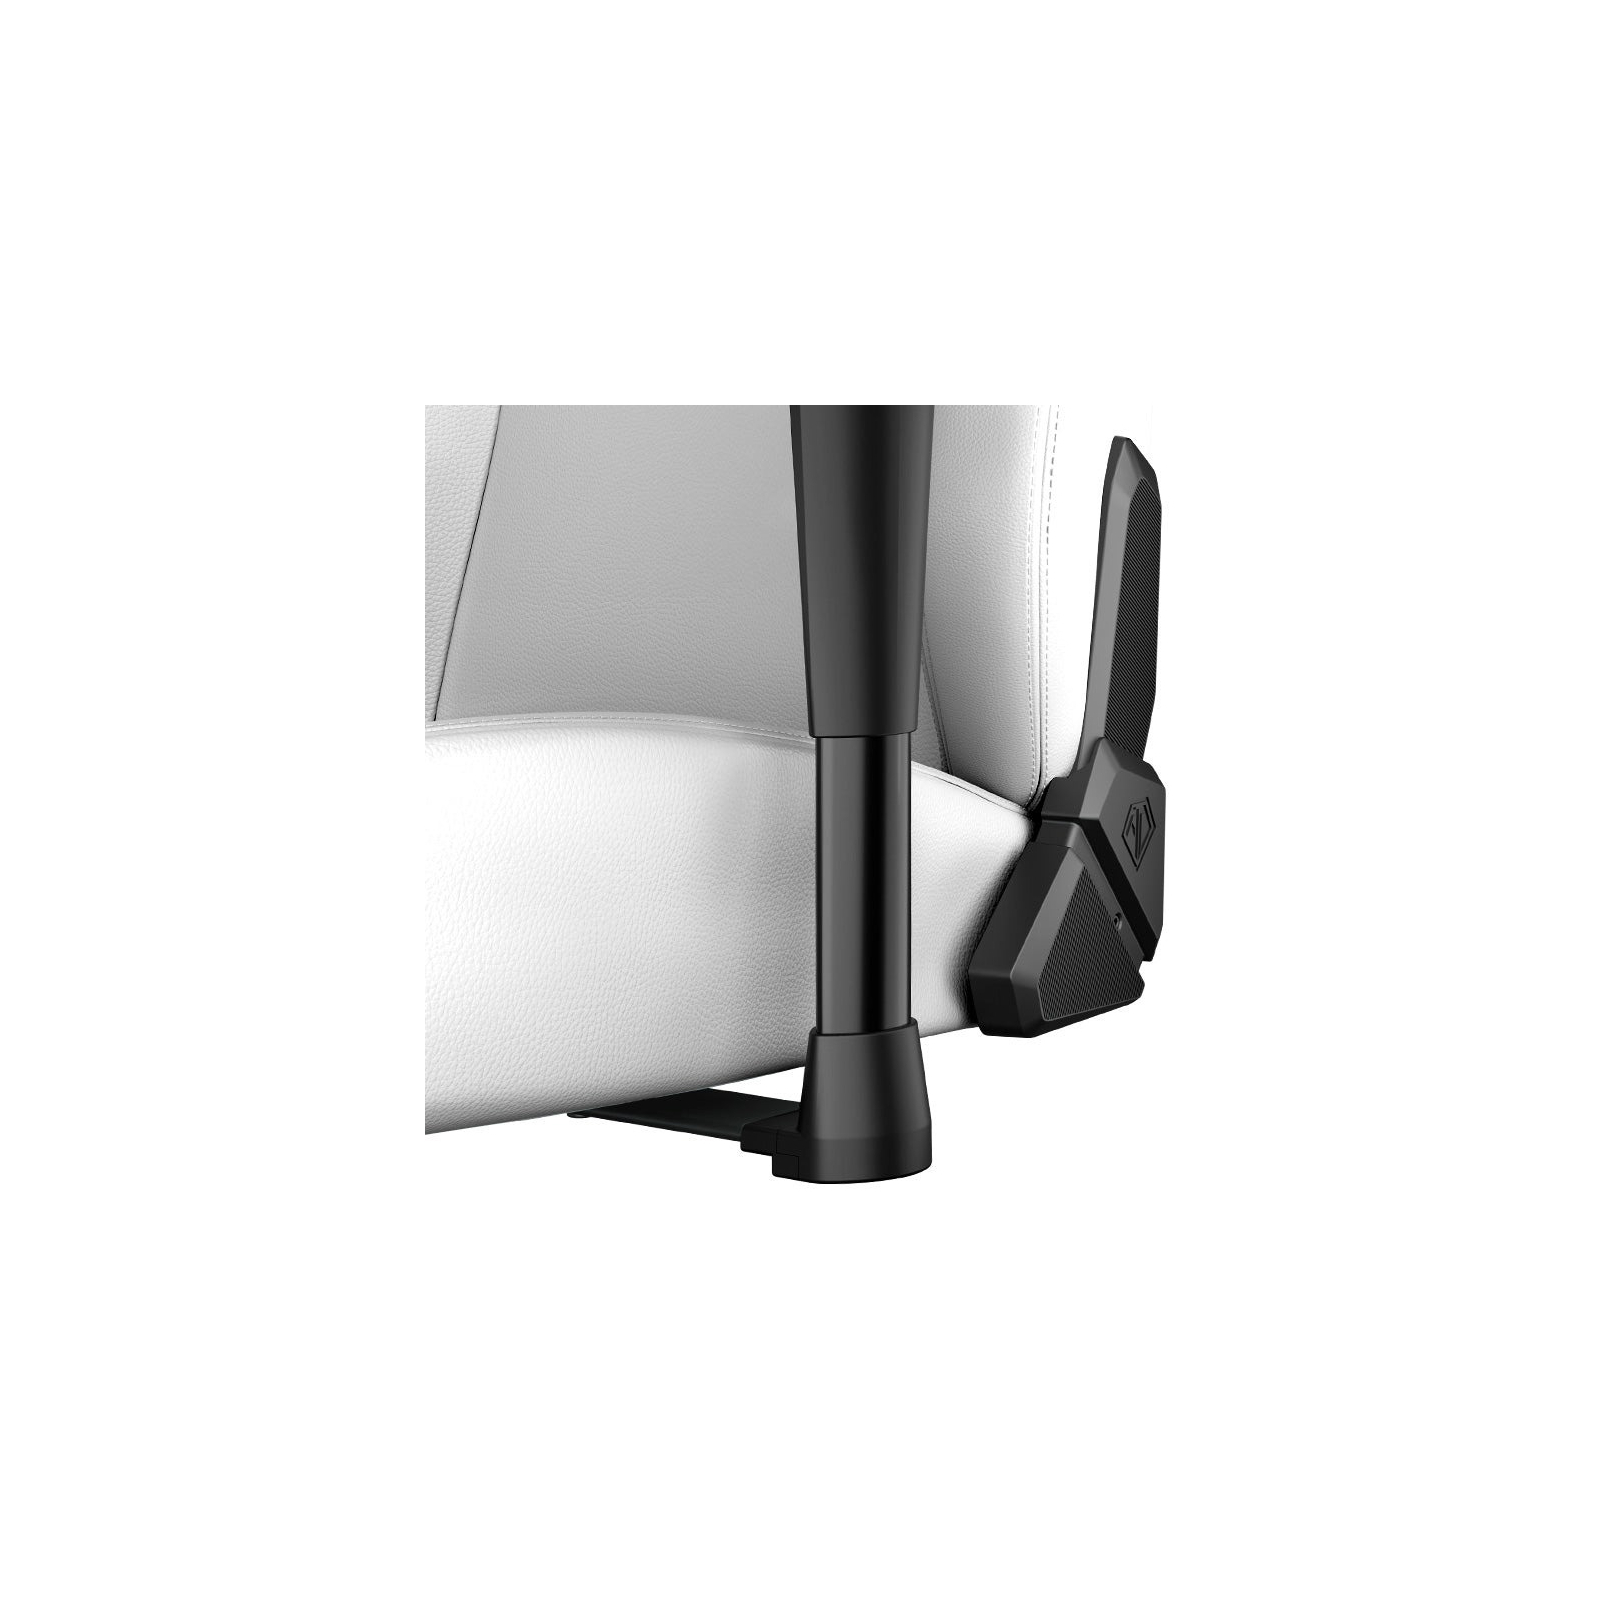 Кресло игровое Anda Seat Phantom 3 Size L Black/Black (AD18Y-06-B-PV/C-B01) изображение 7